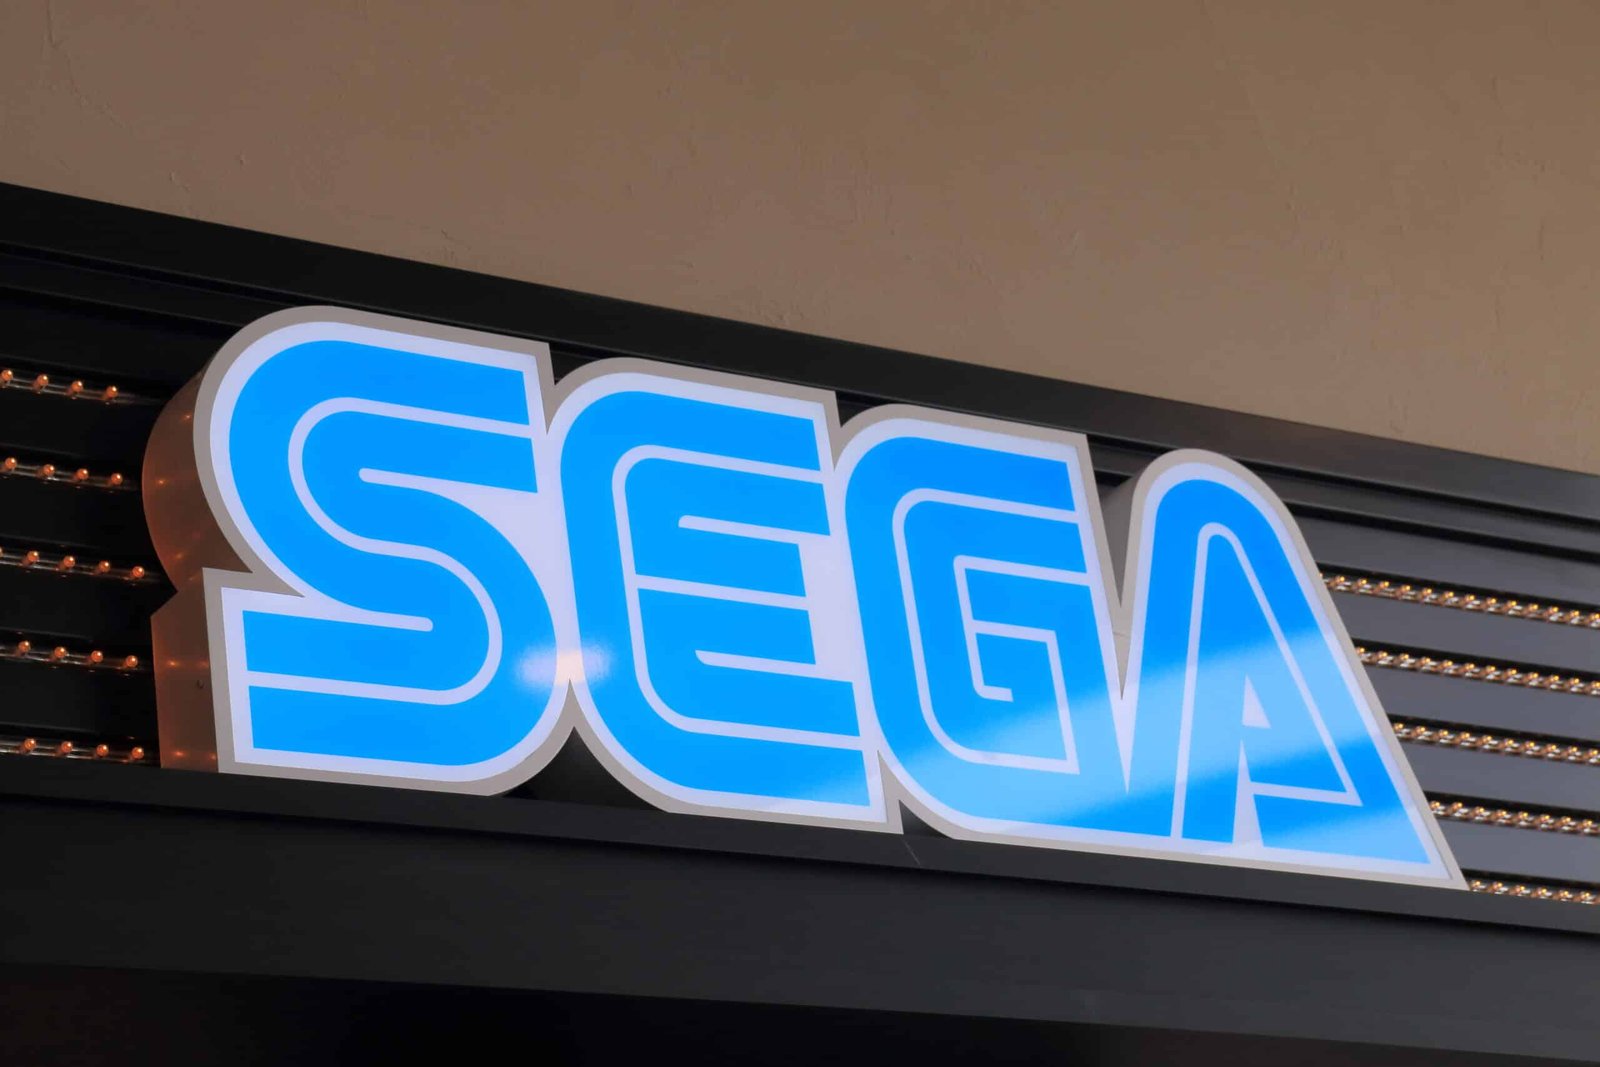 Sega-Consoles-header-scaled